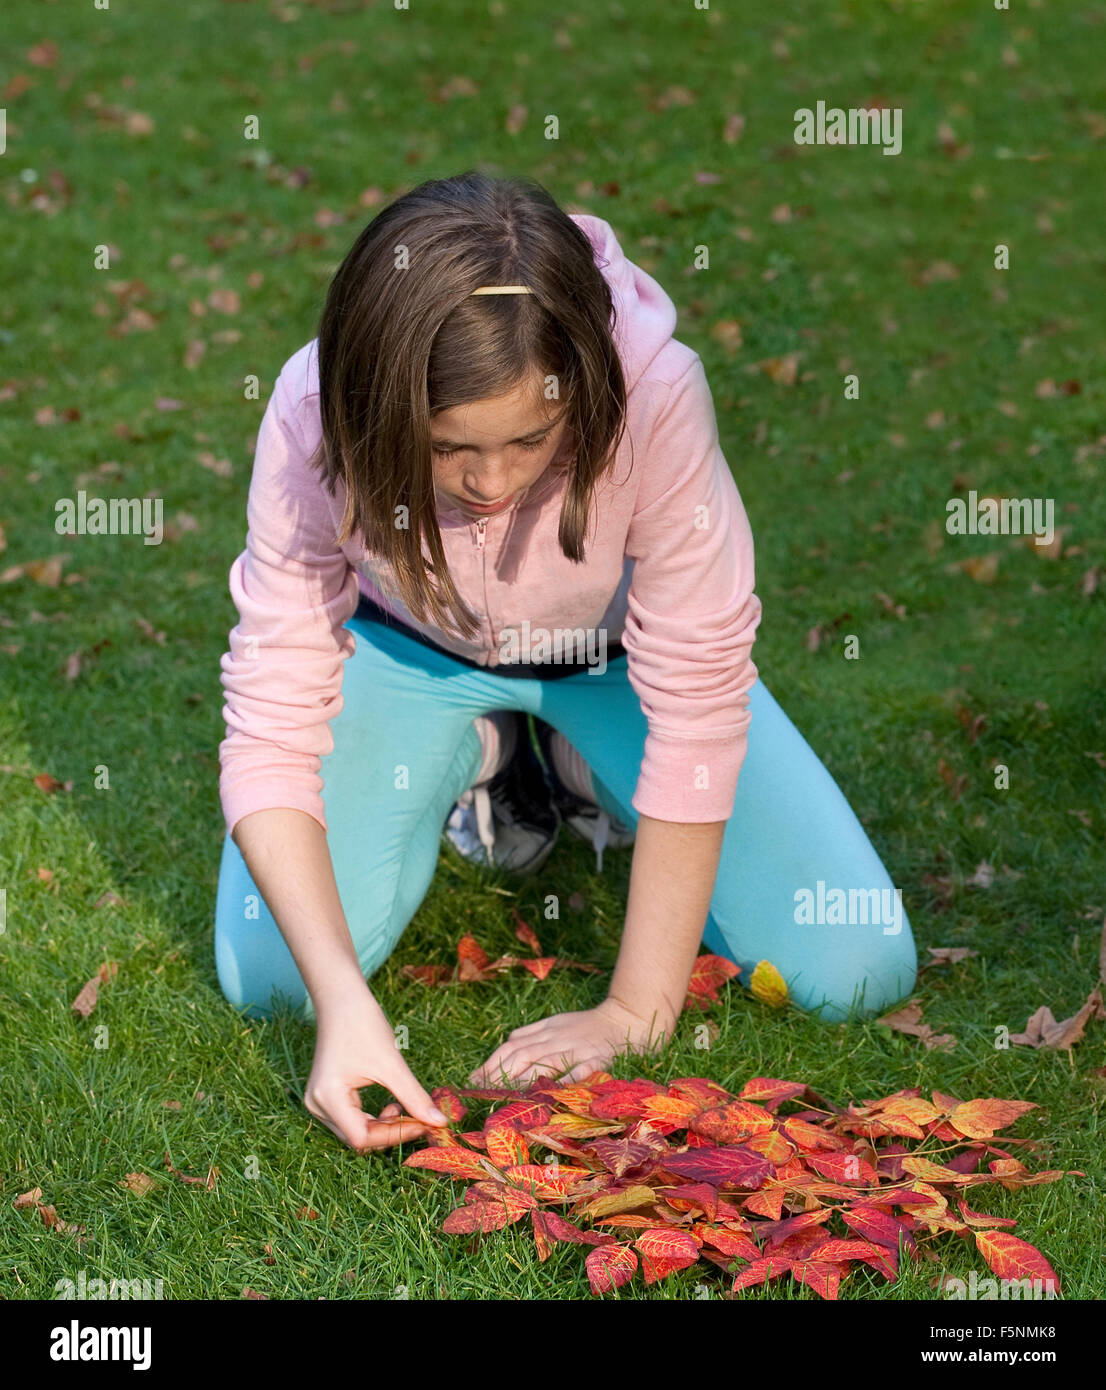 Il gioco è stato giocato con foglie di autunno. La giovane ragazza sta cercando di fare un server Sun con foglie sull'erba verde. Foto Stock